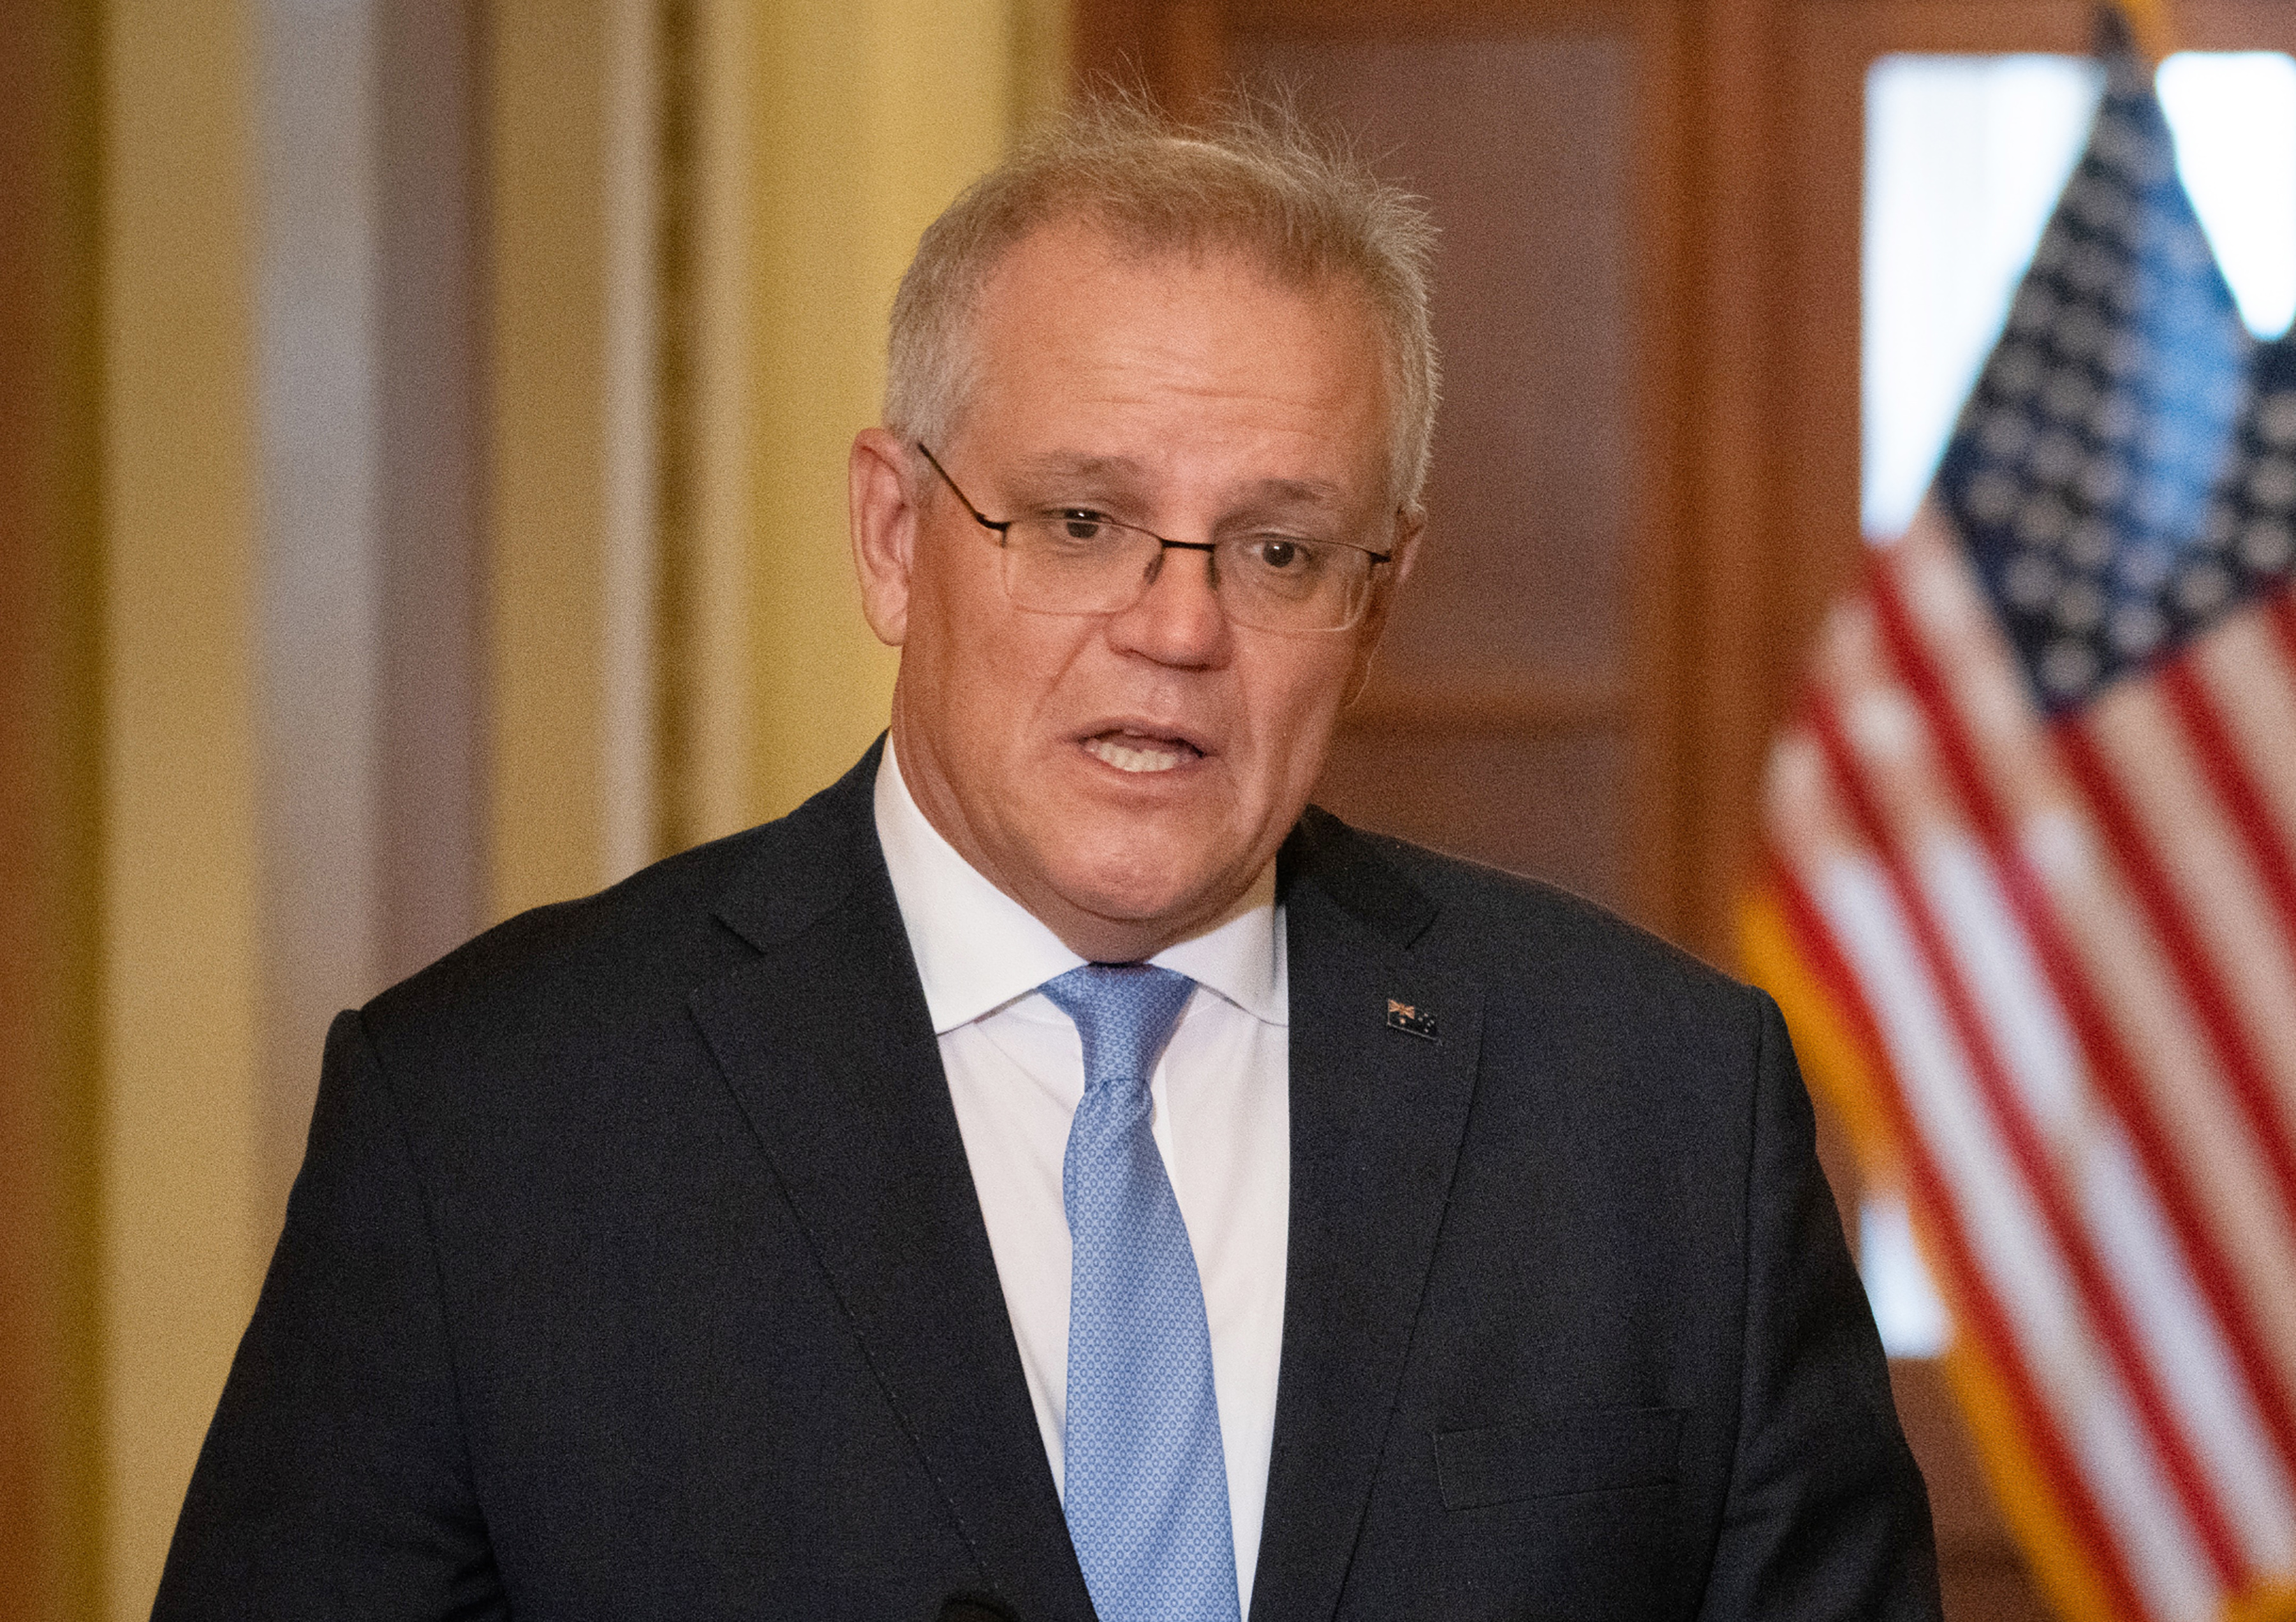 El primer ministro de Australia Scott Morrison, habla ante el Capitolio estadounidense en Washington, el 22 de septiembre de 2021. (Foto Prensa Libre: Sarahbeth Maney/The New York Times)